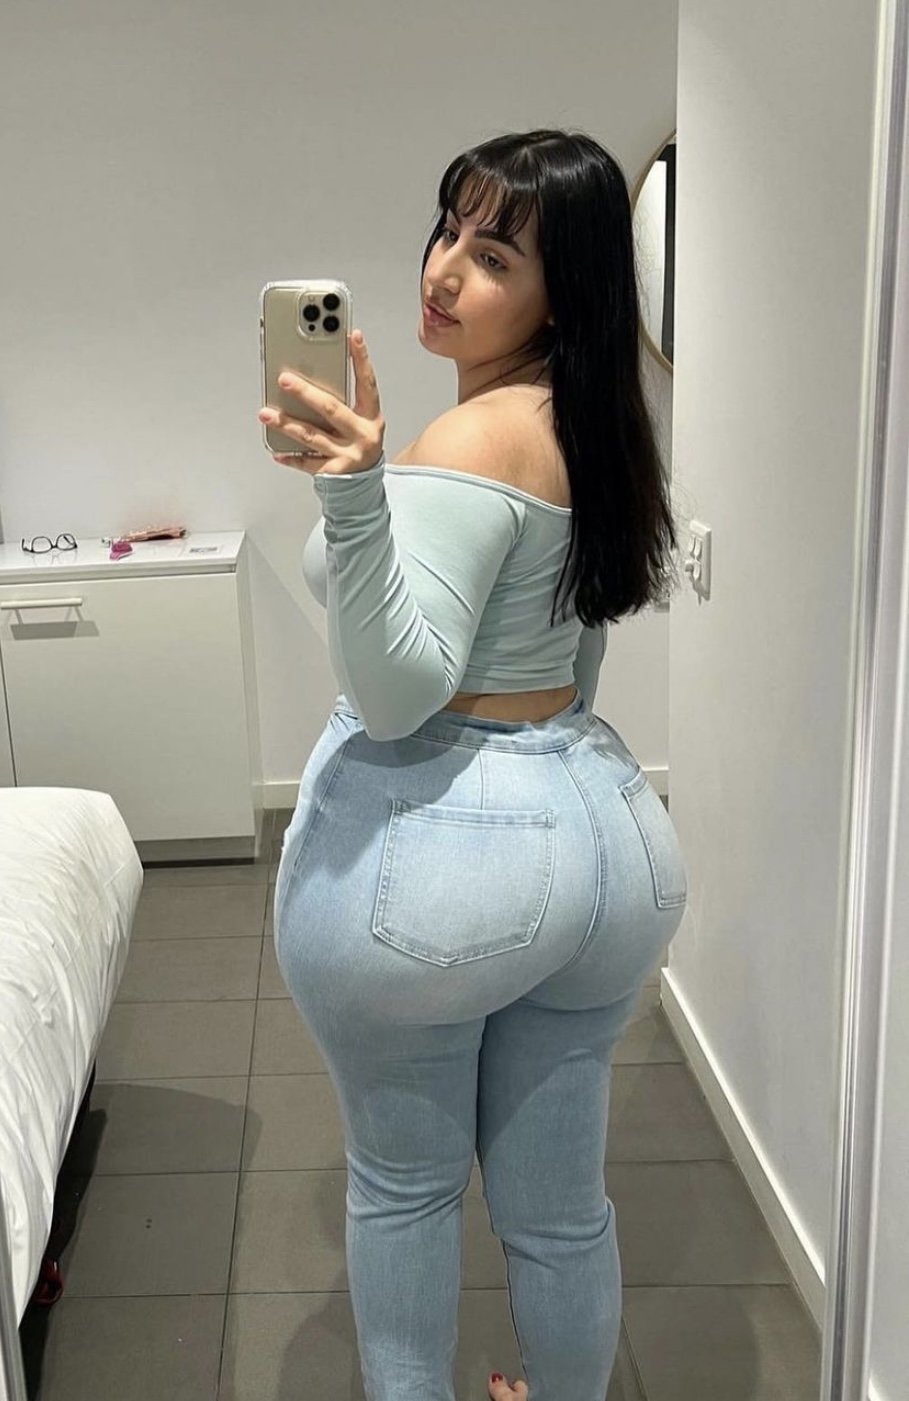 Black Big Ass Latina Self Pics - Hot Big Ass Latina in Jeans Cum Tribute - Porn - EroMe